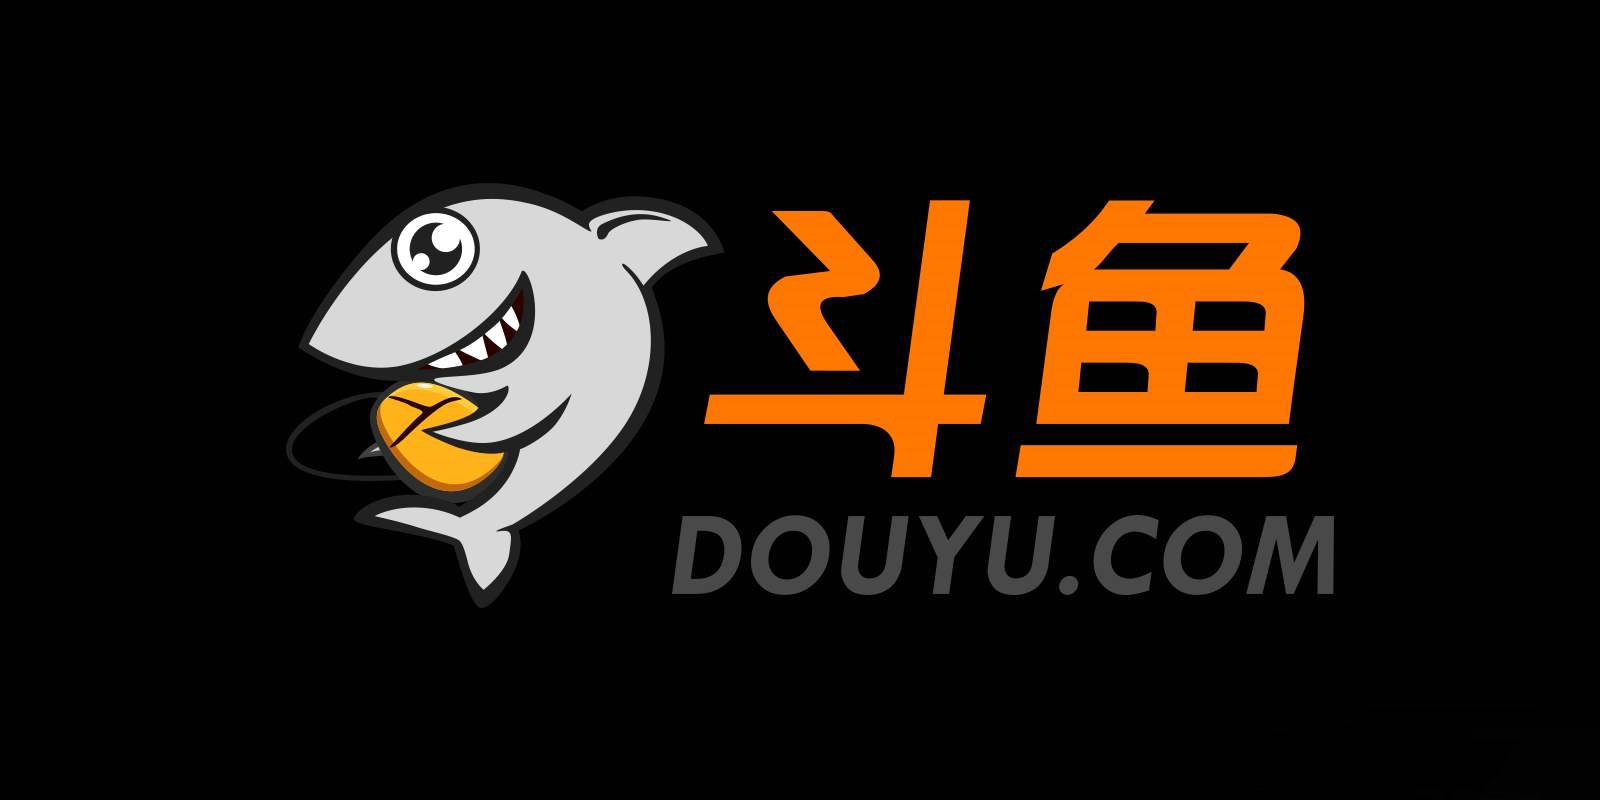 斗鱼TV的前身为ACFUN生放送直播，于2014年1月1日起正式更名为斗鱼TV。斗鱼TV以游戏直播为主，目前涵盖了娱乐、综艺、体育、户外等多种直播内容。